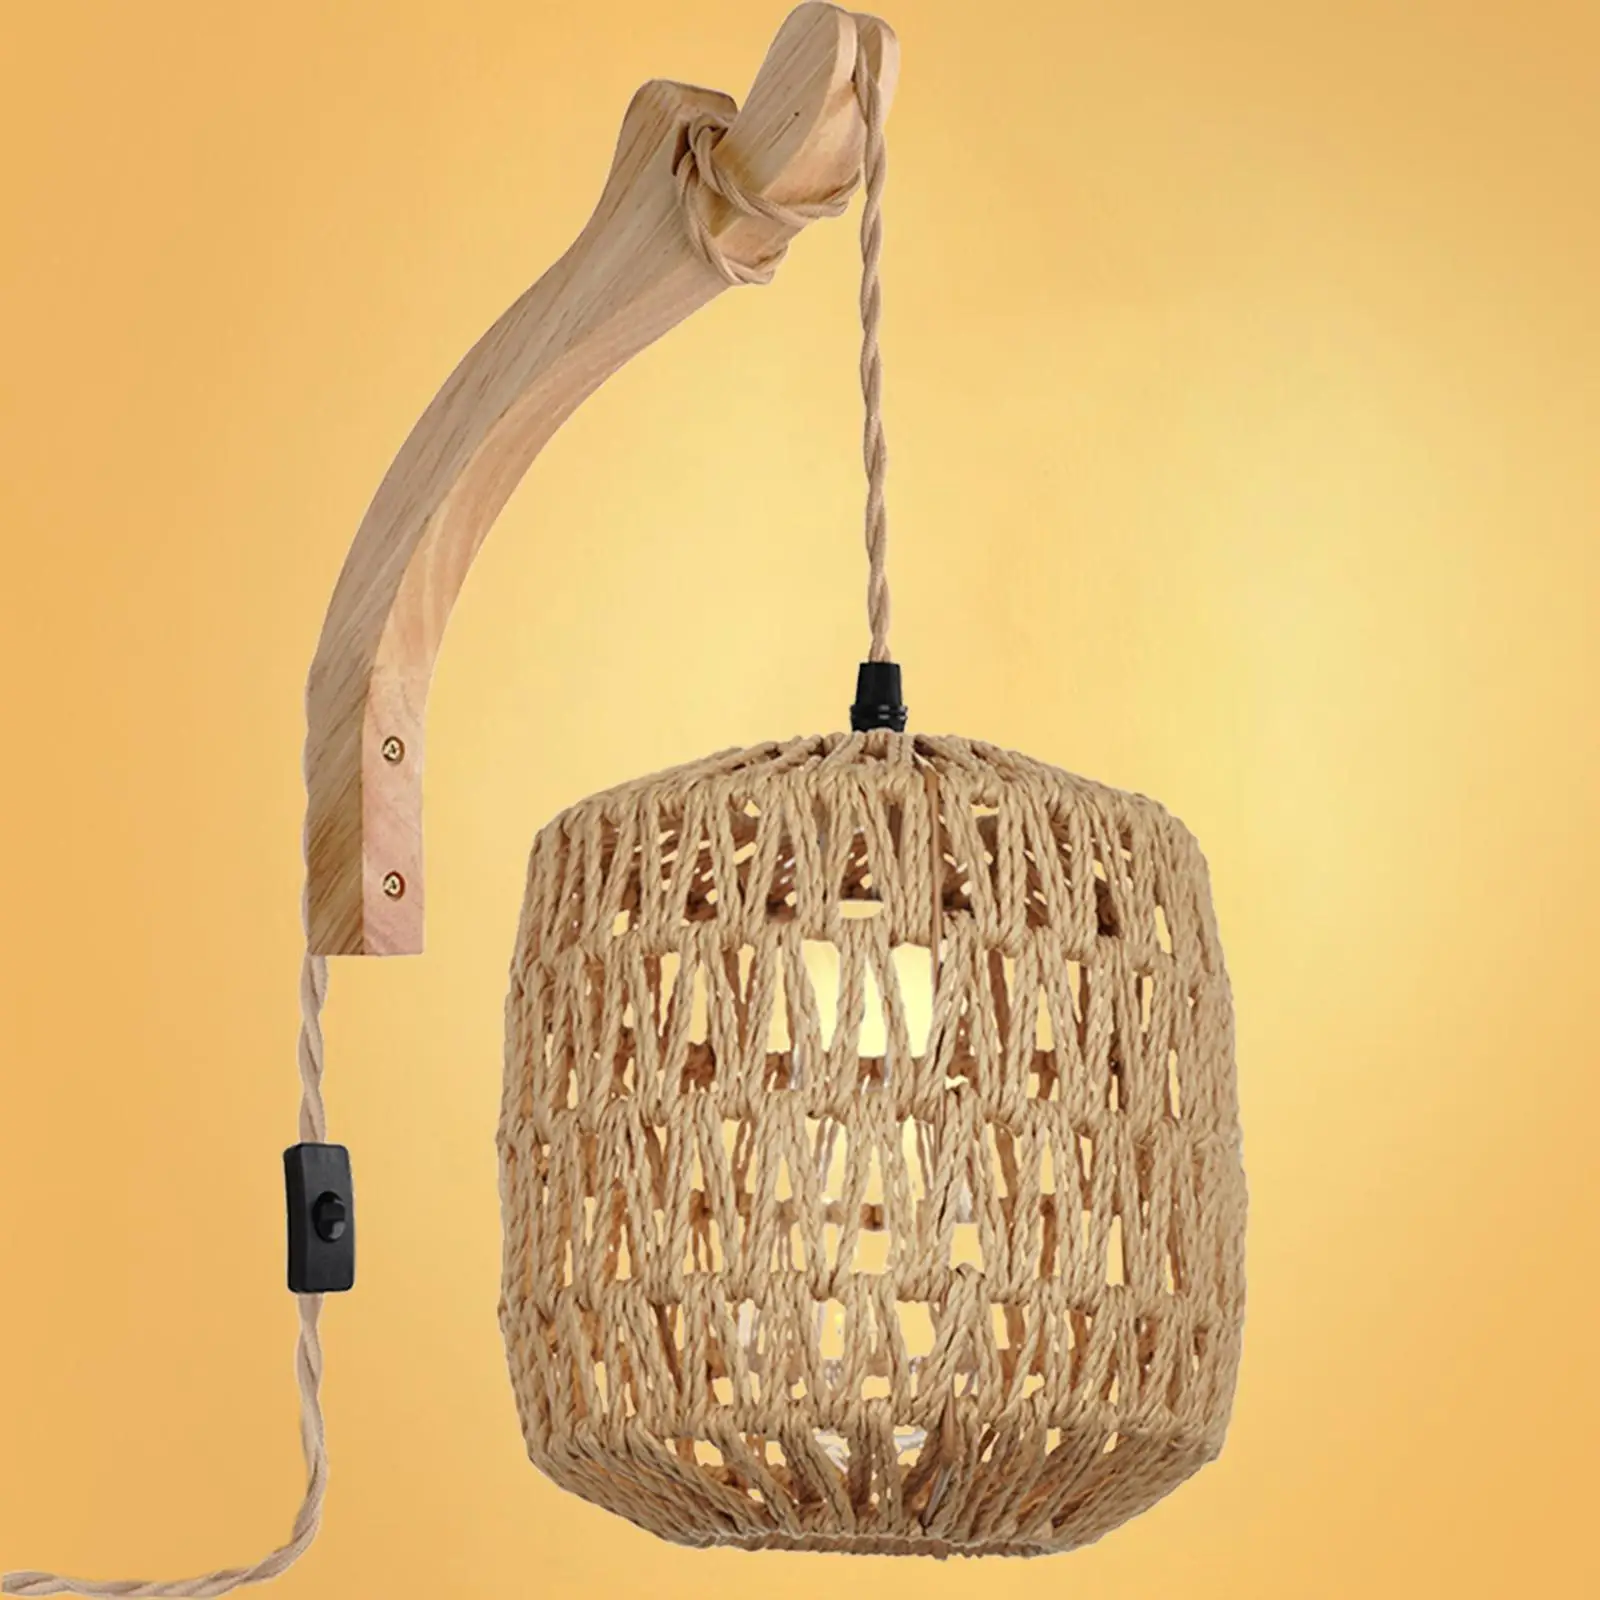 

Настенный светильник с абажуром, плетеный вручную, в стиле бохо, настенное бра с деревянным кронштейном, настенное бра для крыльца, детской, спальни